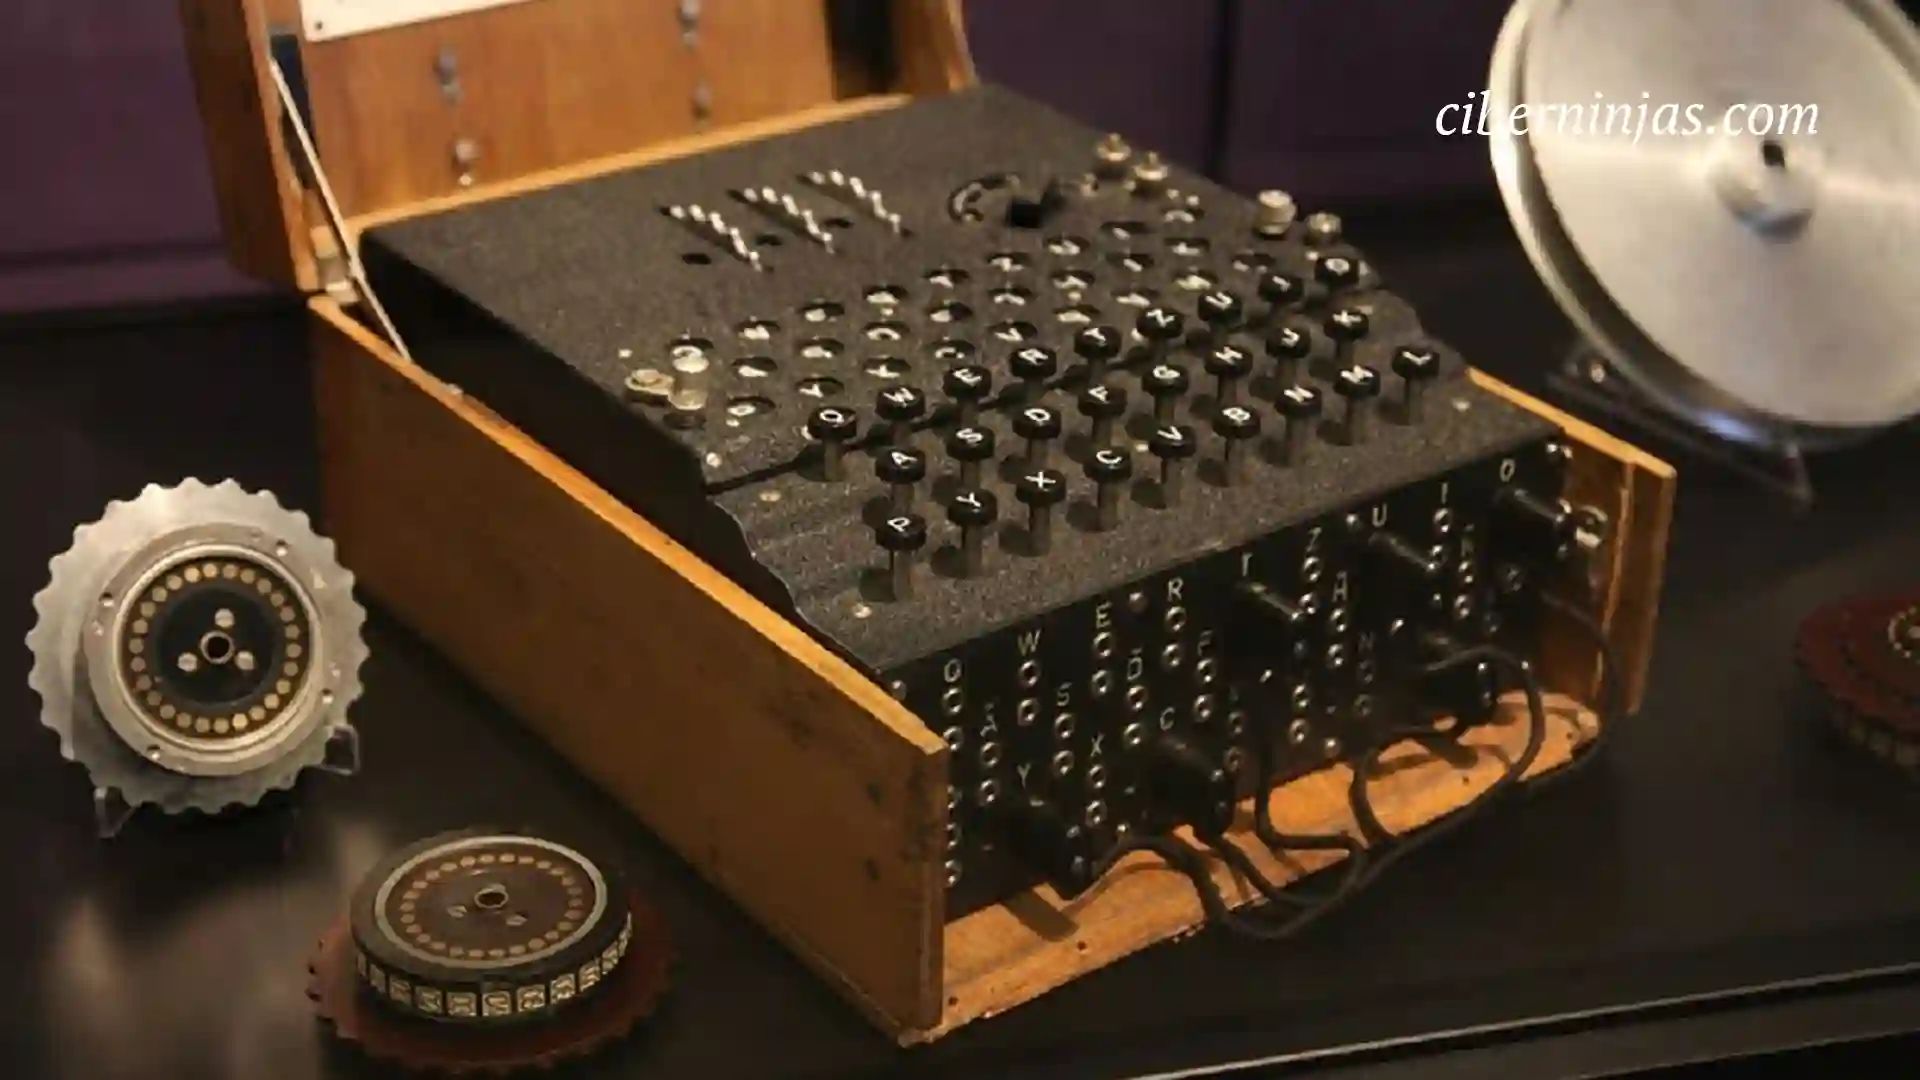 La máquina de Enigma, encargada de realizar las comunicaciones encriptadas alemanas durante la segunda guerra mundial